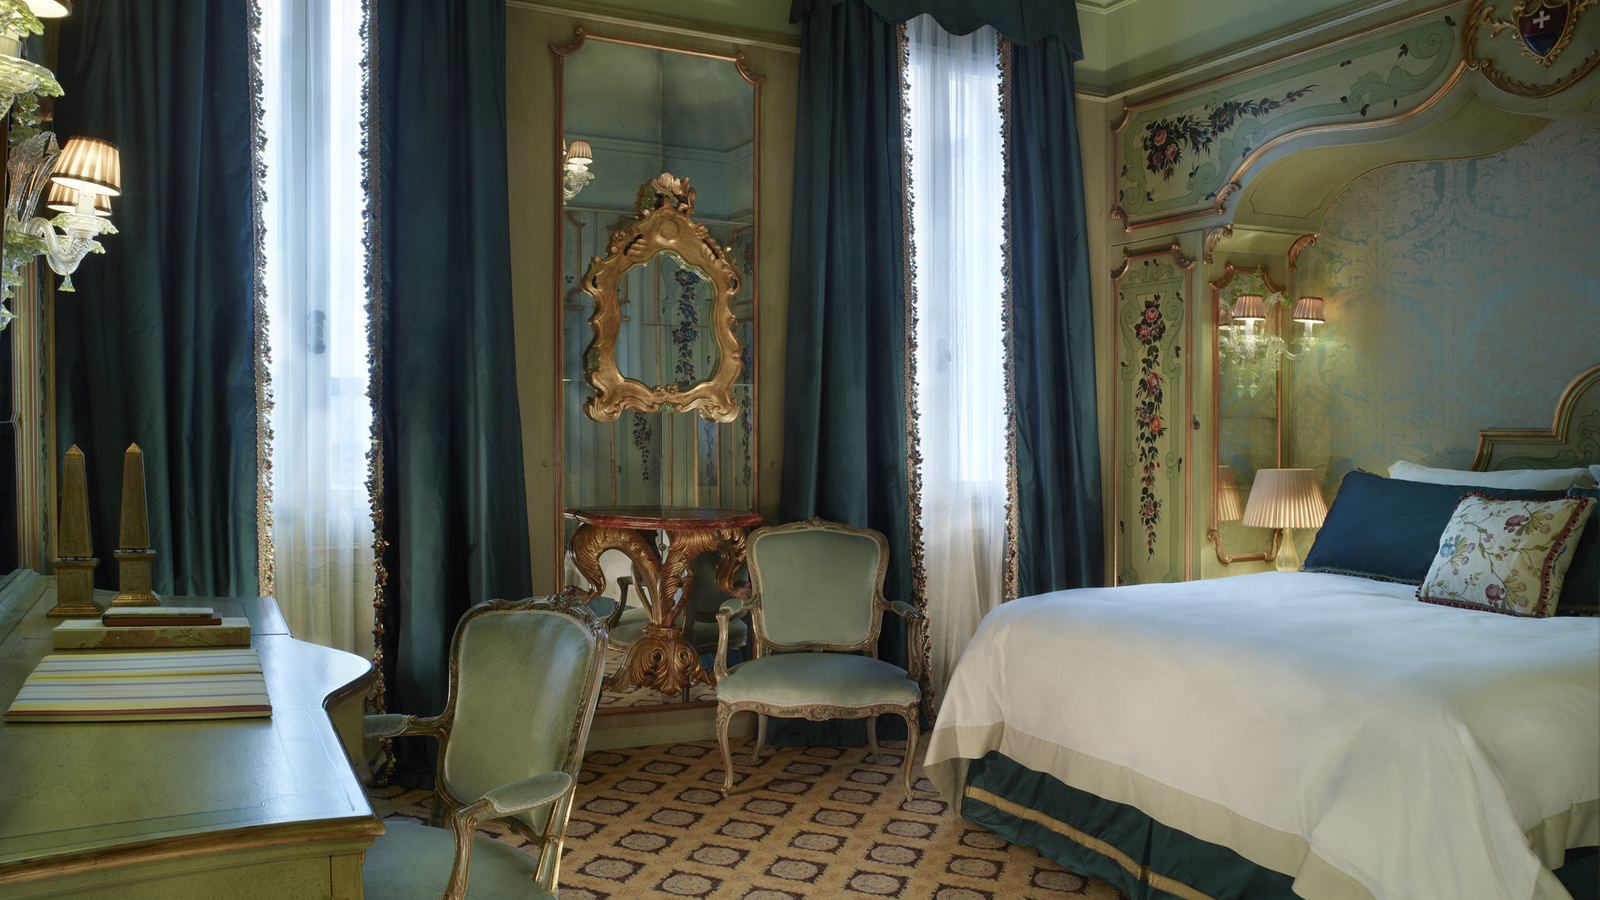 Bενετσιάνικο παλάτι μετατράπηκε σε ένα μαγικό πλωτό ξενοδοχείο. - Εικόνα 11